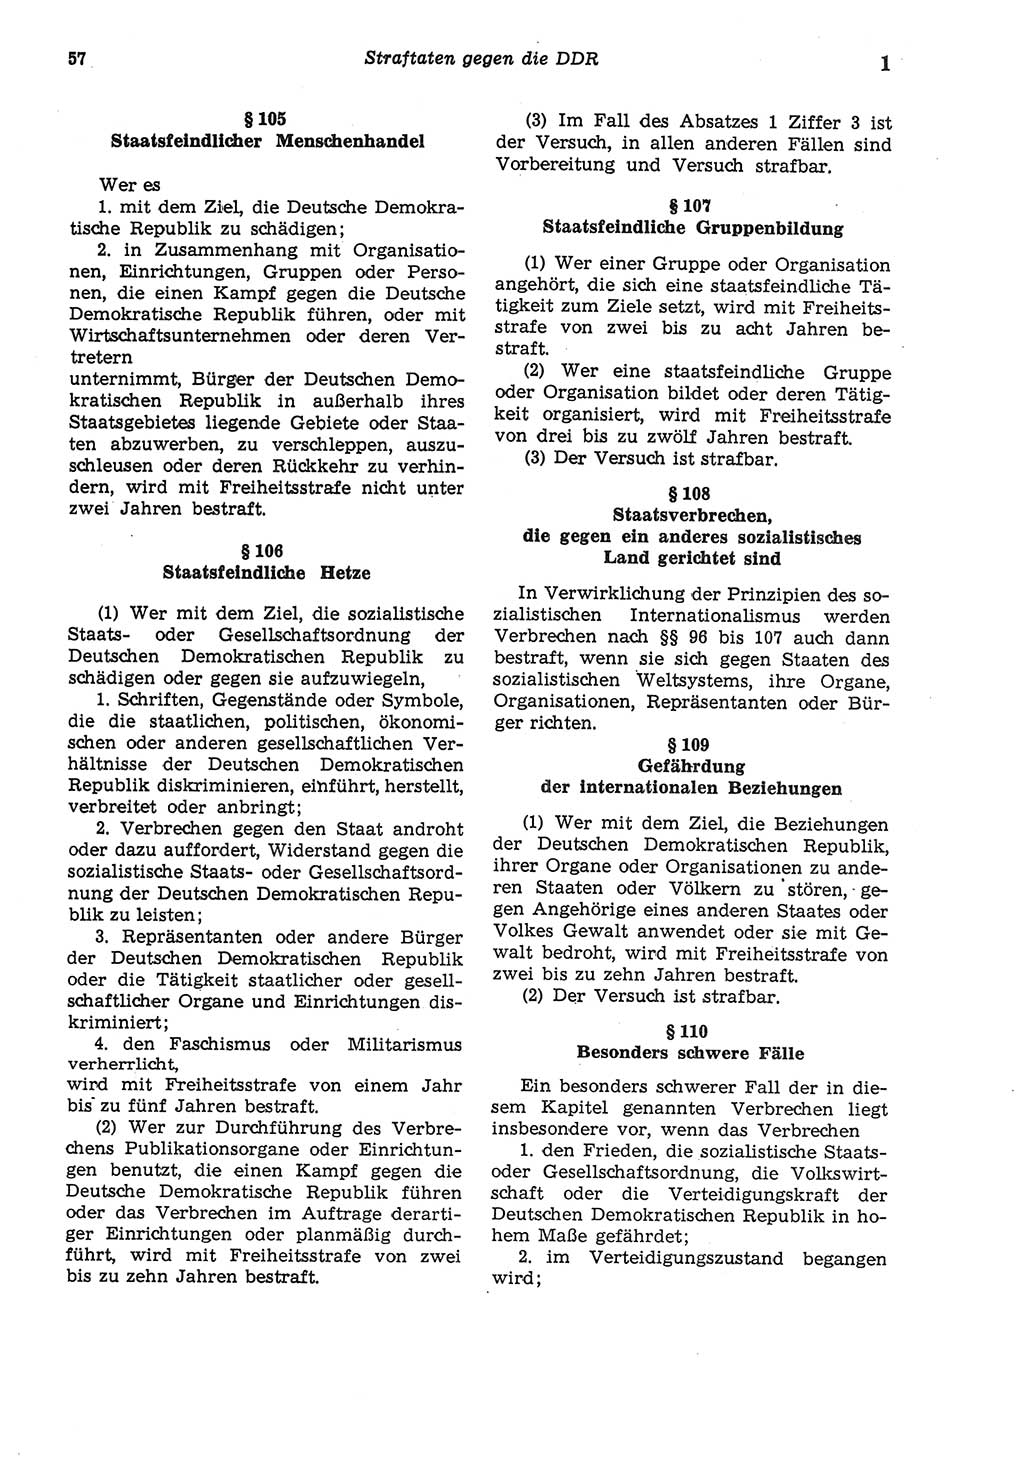 Strafgesetzbuch (StGB) der Deutschen Demokratischen Republik (DDR) und angrenzende Gesetze und Bestimmungen 1975, Seite 57 (StGB DDR Ges. Best. 1975, S. 57)